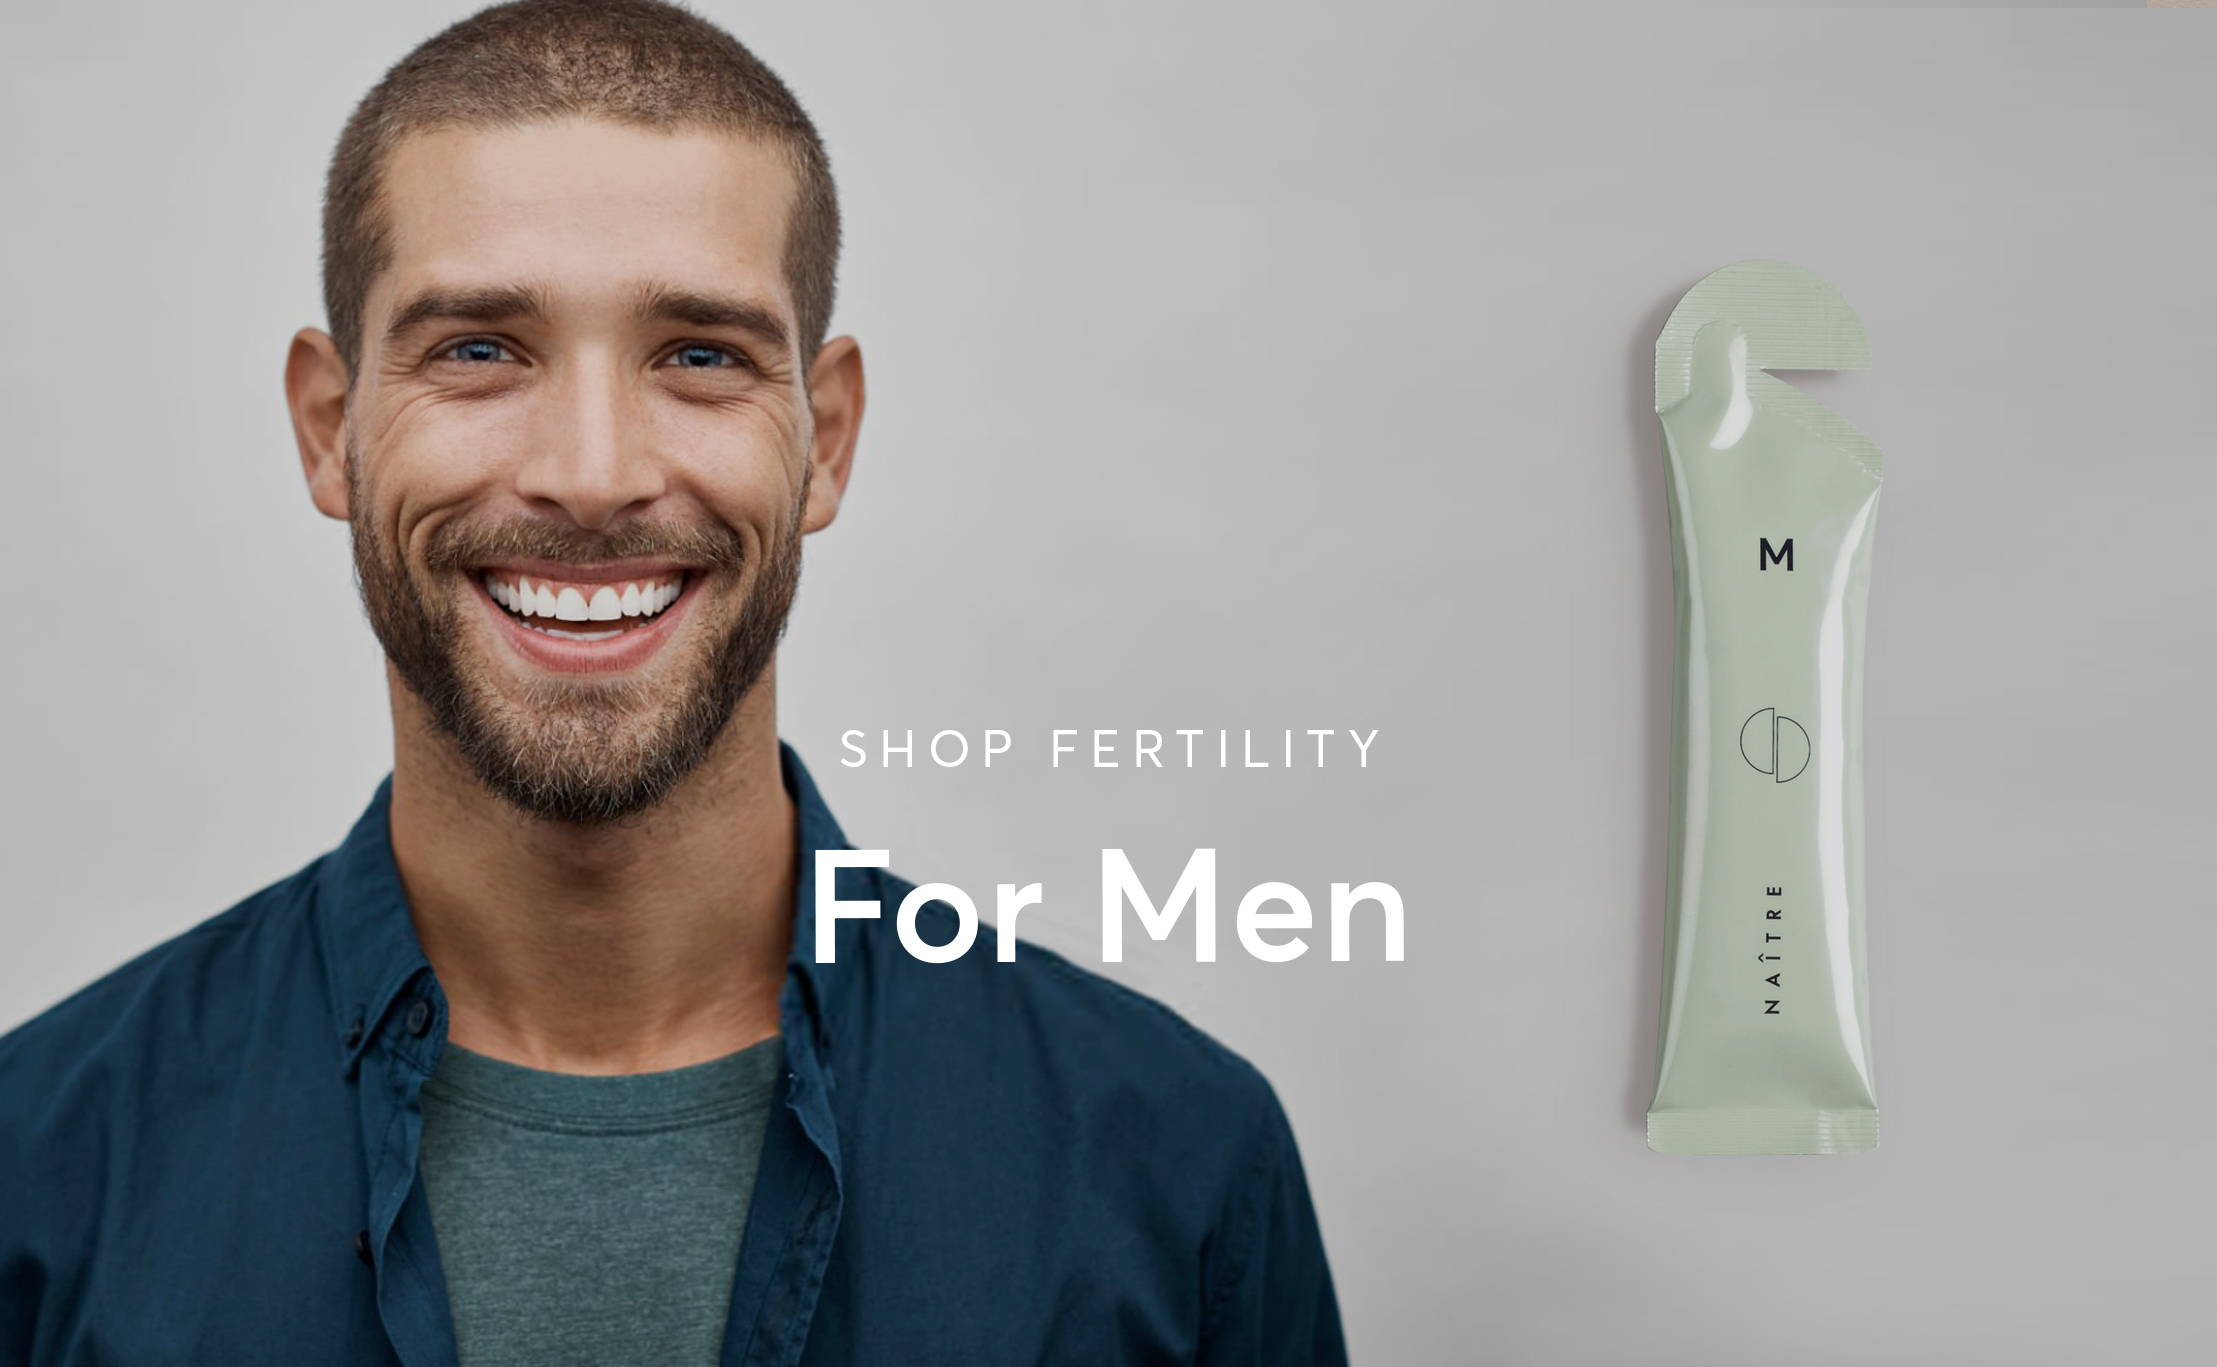 Shop Fertility For Men